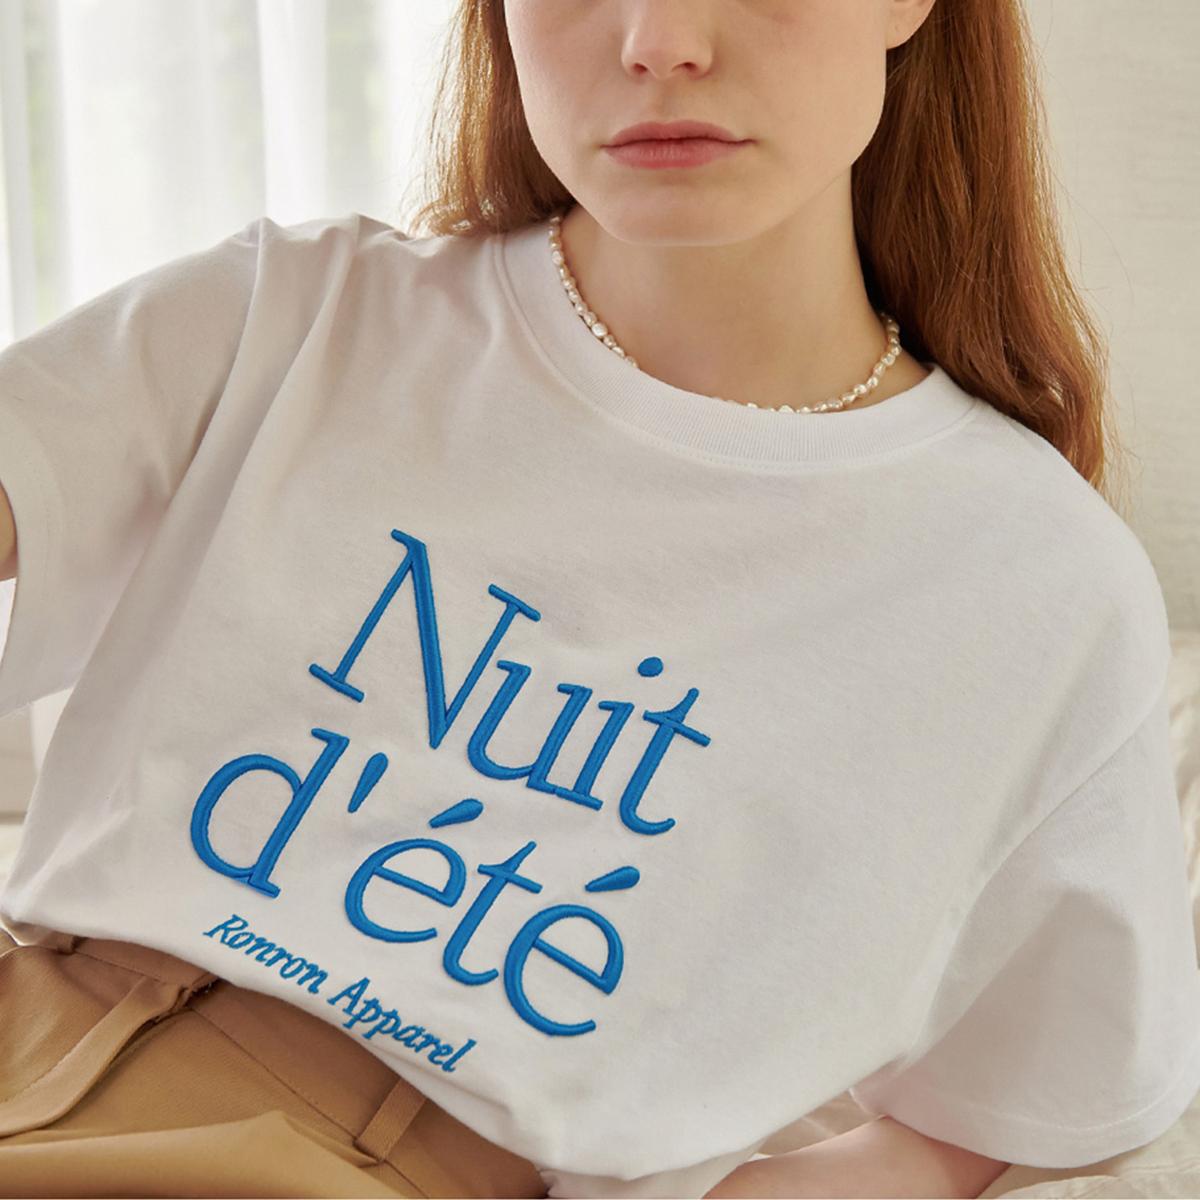 NUIT D ETE短袖T恤